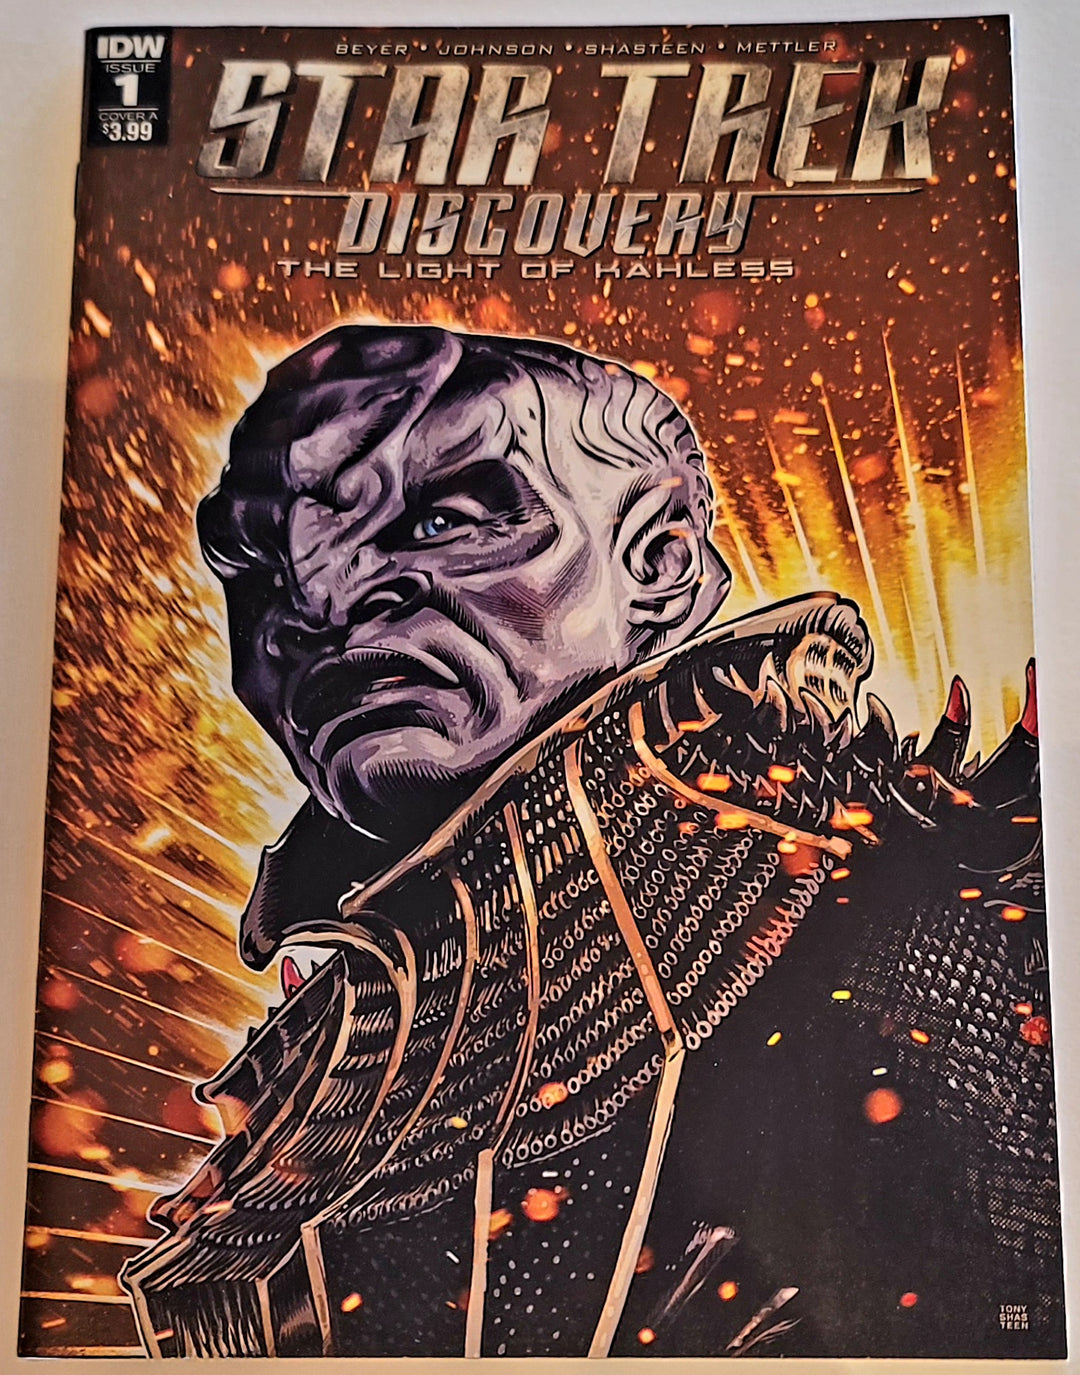 Star Trek Discovery: La luz de Kahless IDW Comic Book #1